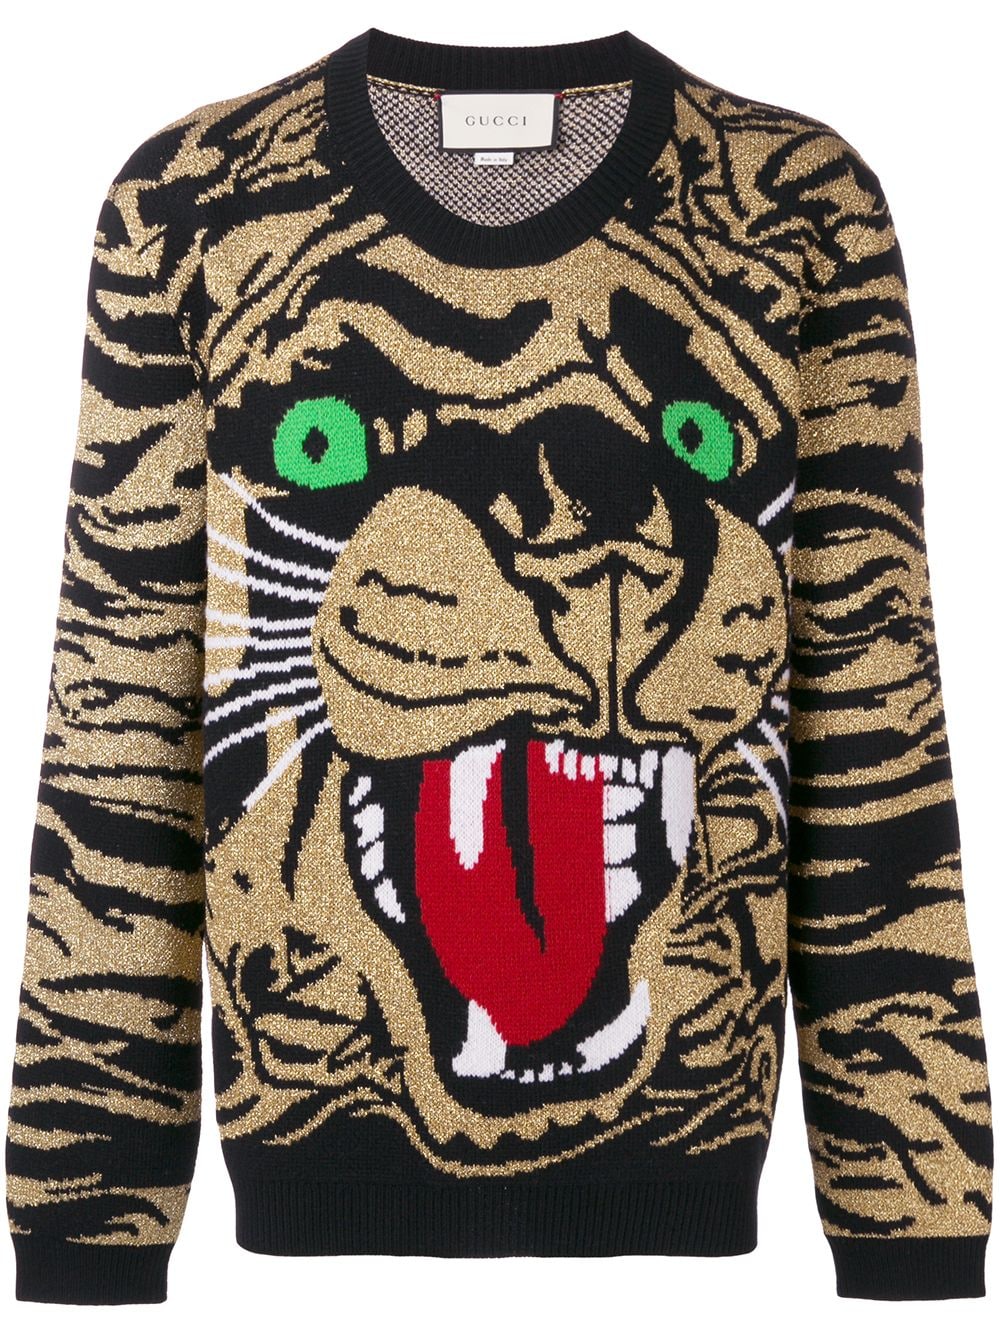 фото Gucci свитер с изображением тигра